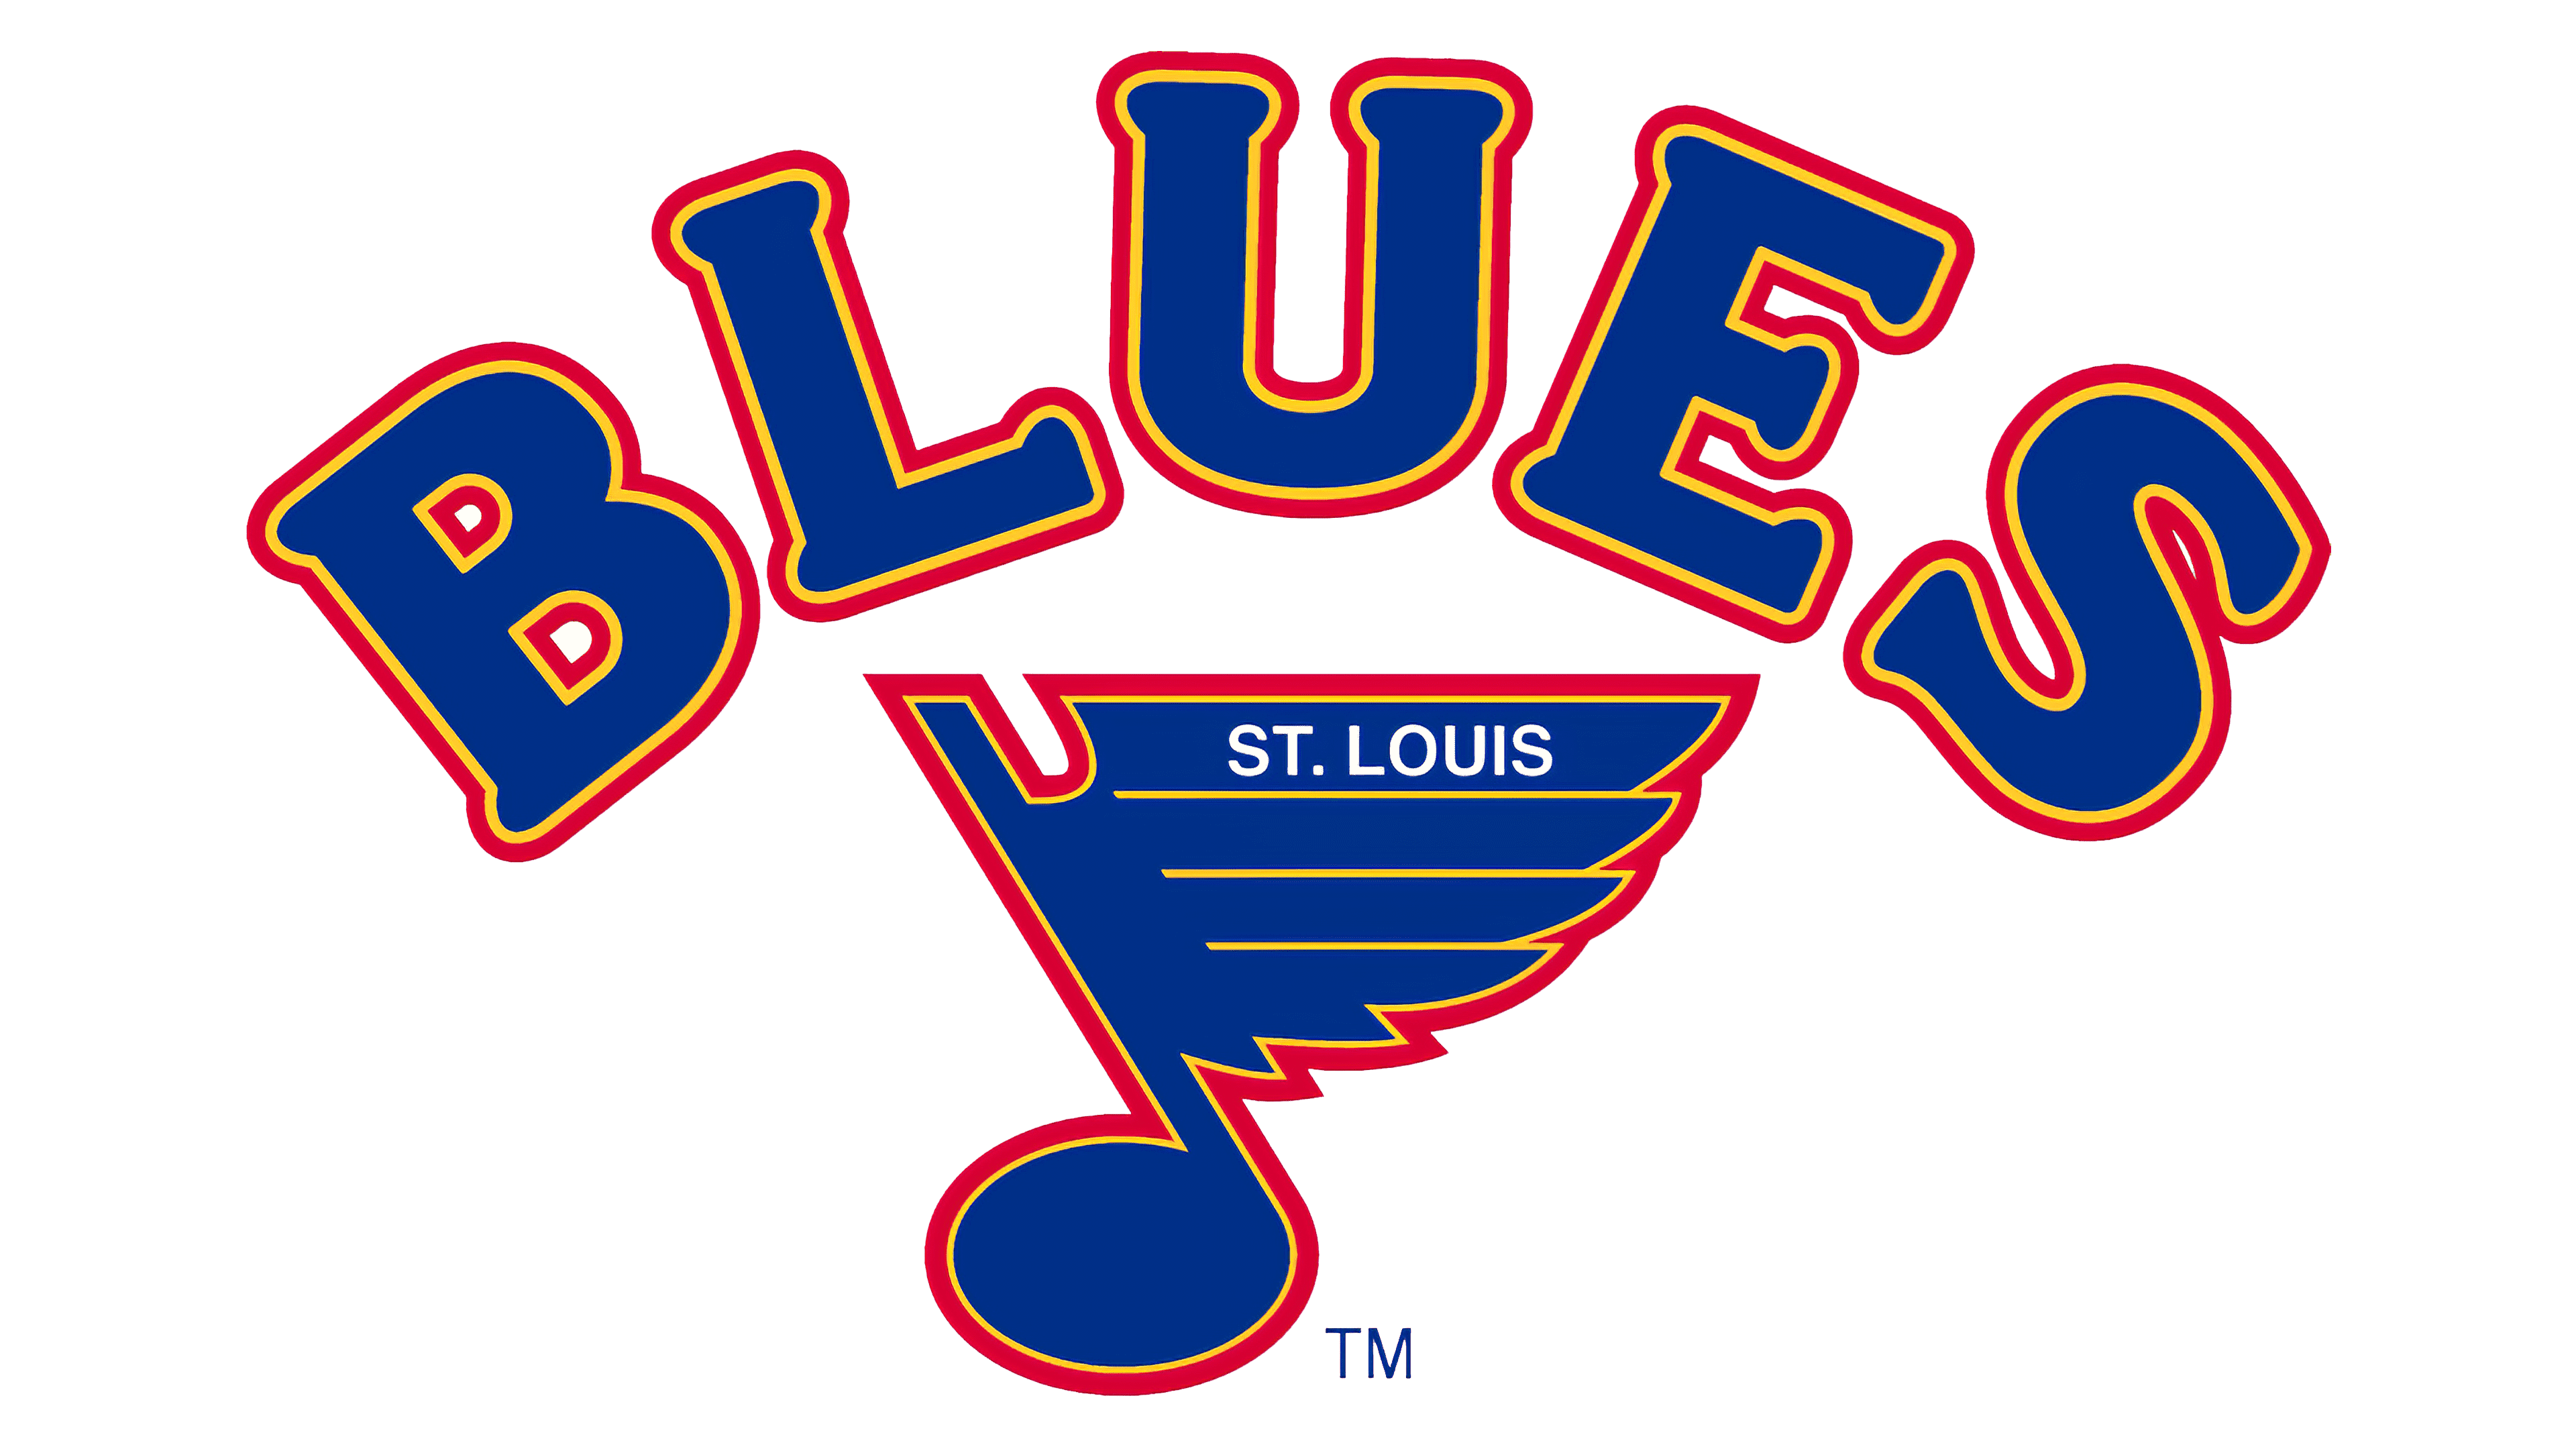 st. louis blues logo